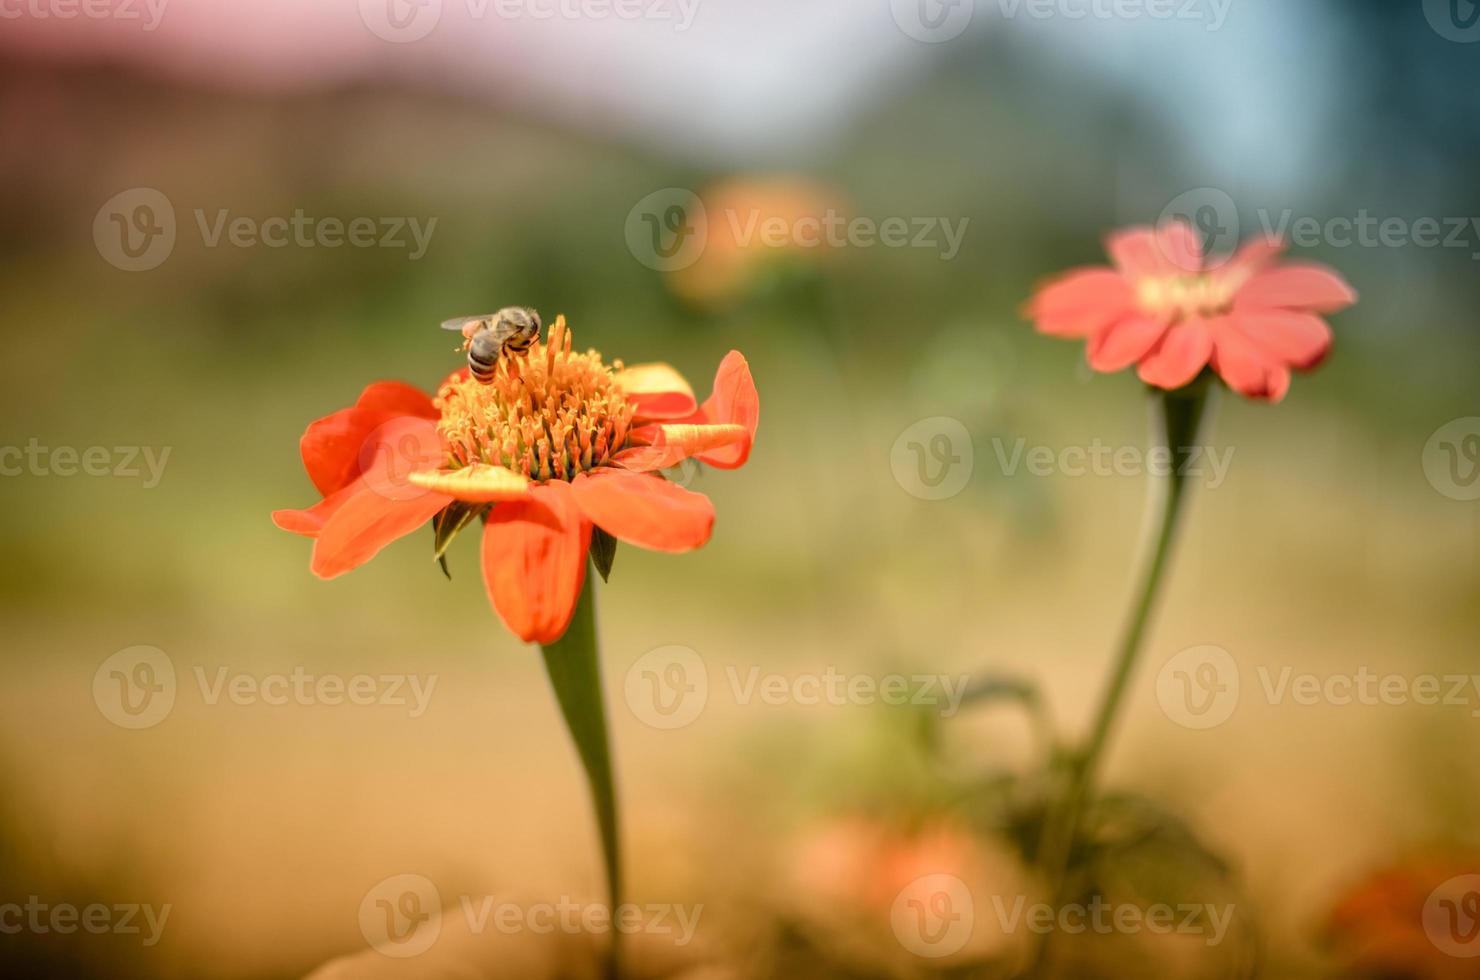 abelha humilde sentada em uma flor dália vermelha foto